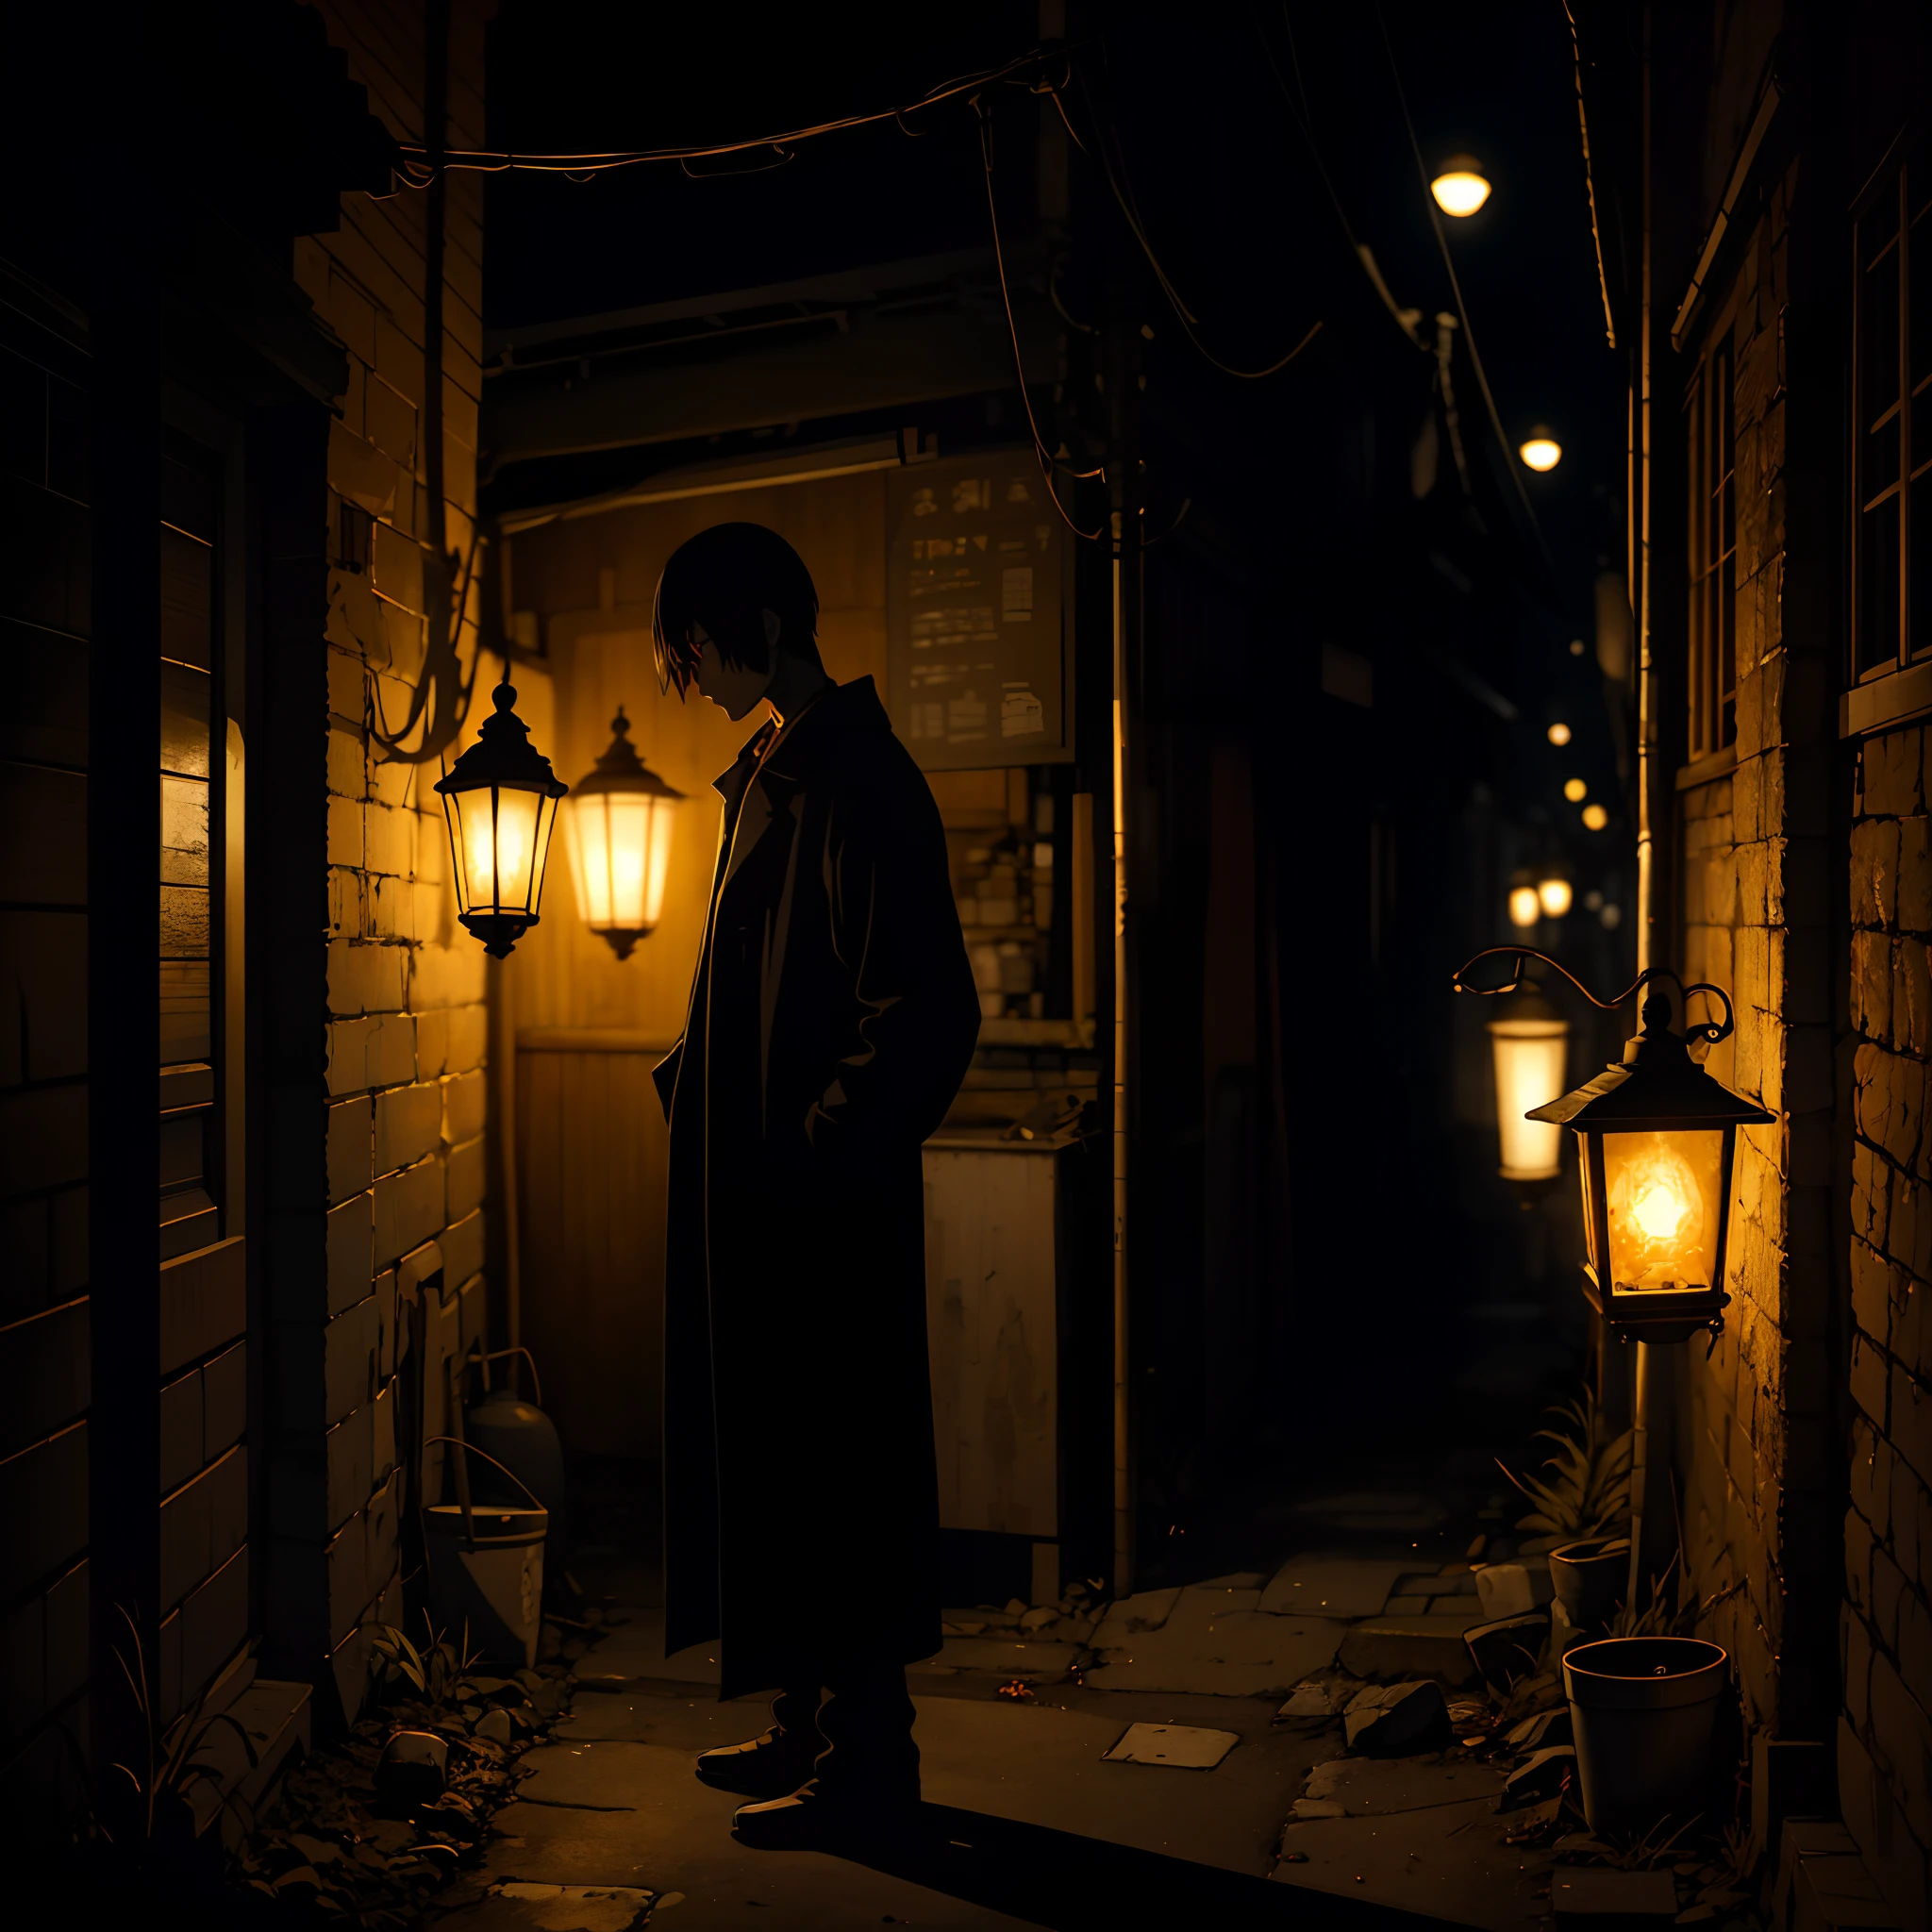 深い路地で，灯油ランプの仄かな光の中で，人影が静かに立っていた，暗闇が彼の詳細を覆い隠した，そして未知はすべての恐怖の源である。